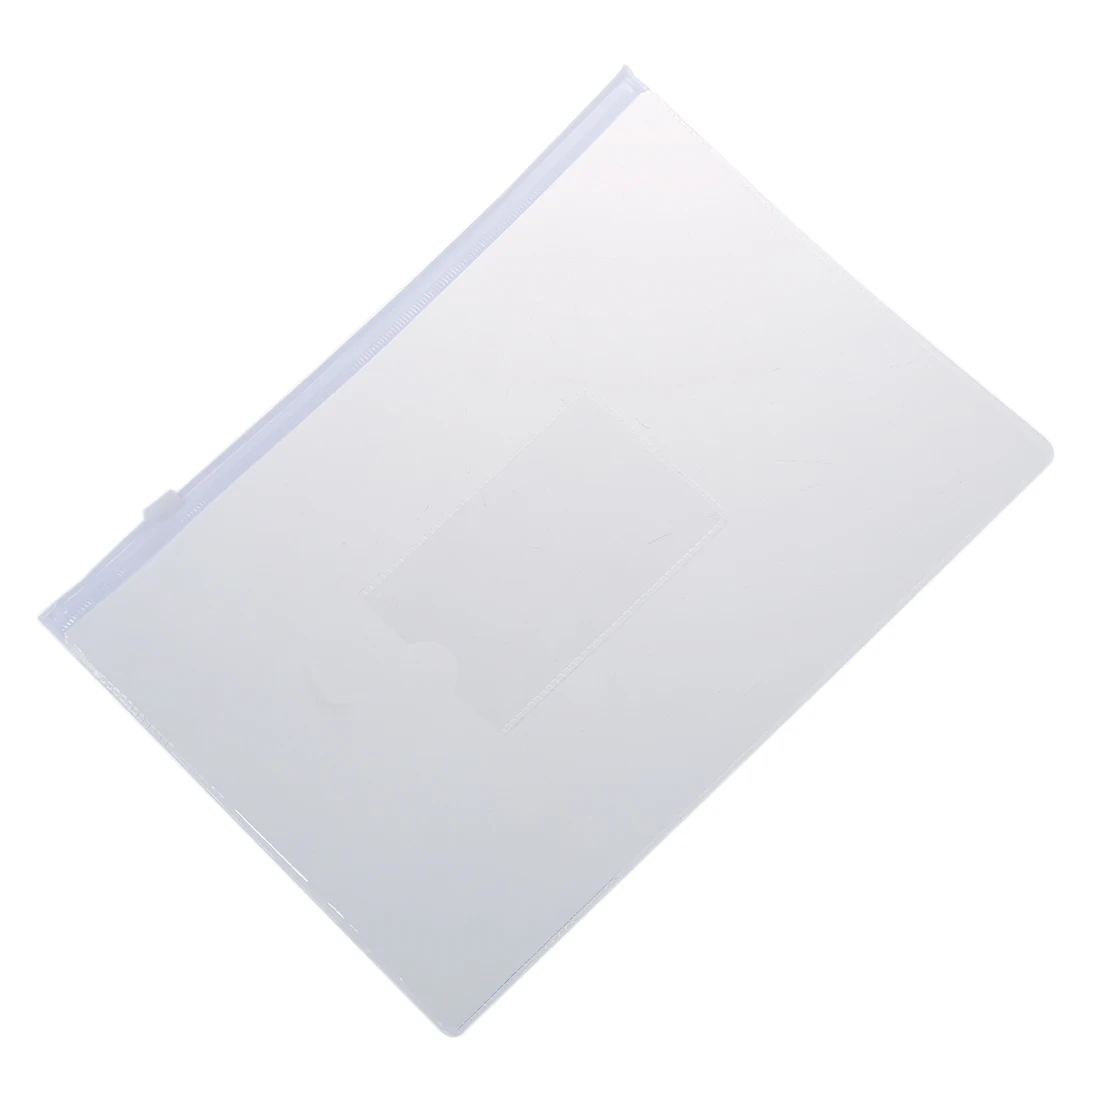 Белые Прозрачные Бумажные папки Формата А5 с застежкой-молнией, пакеты для файлов, 20 шт - 2